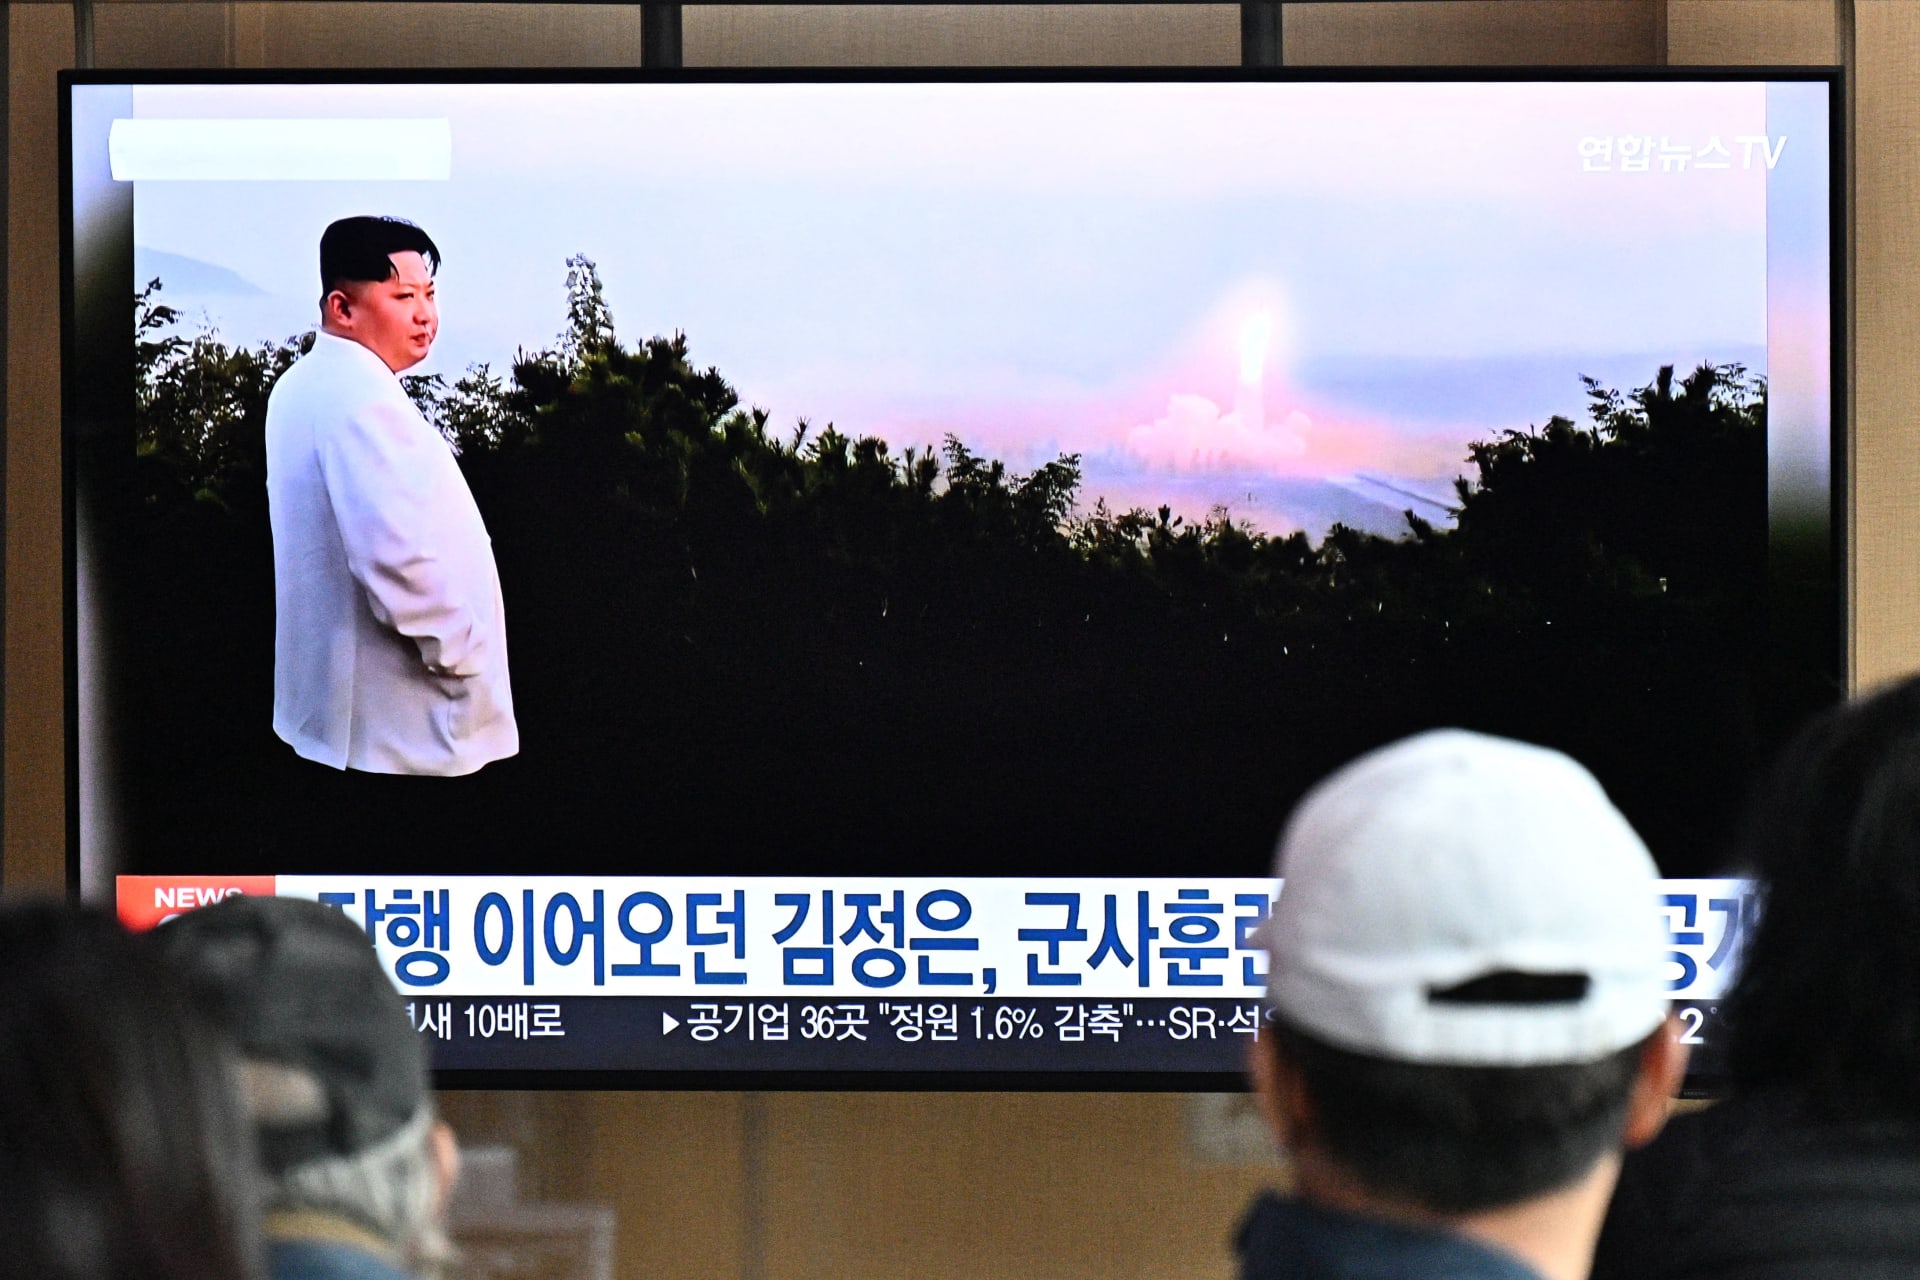 صورة أرشيفية لزعيم كوريا الشمالية خلال إطلاق صاروخ بالستي